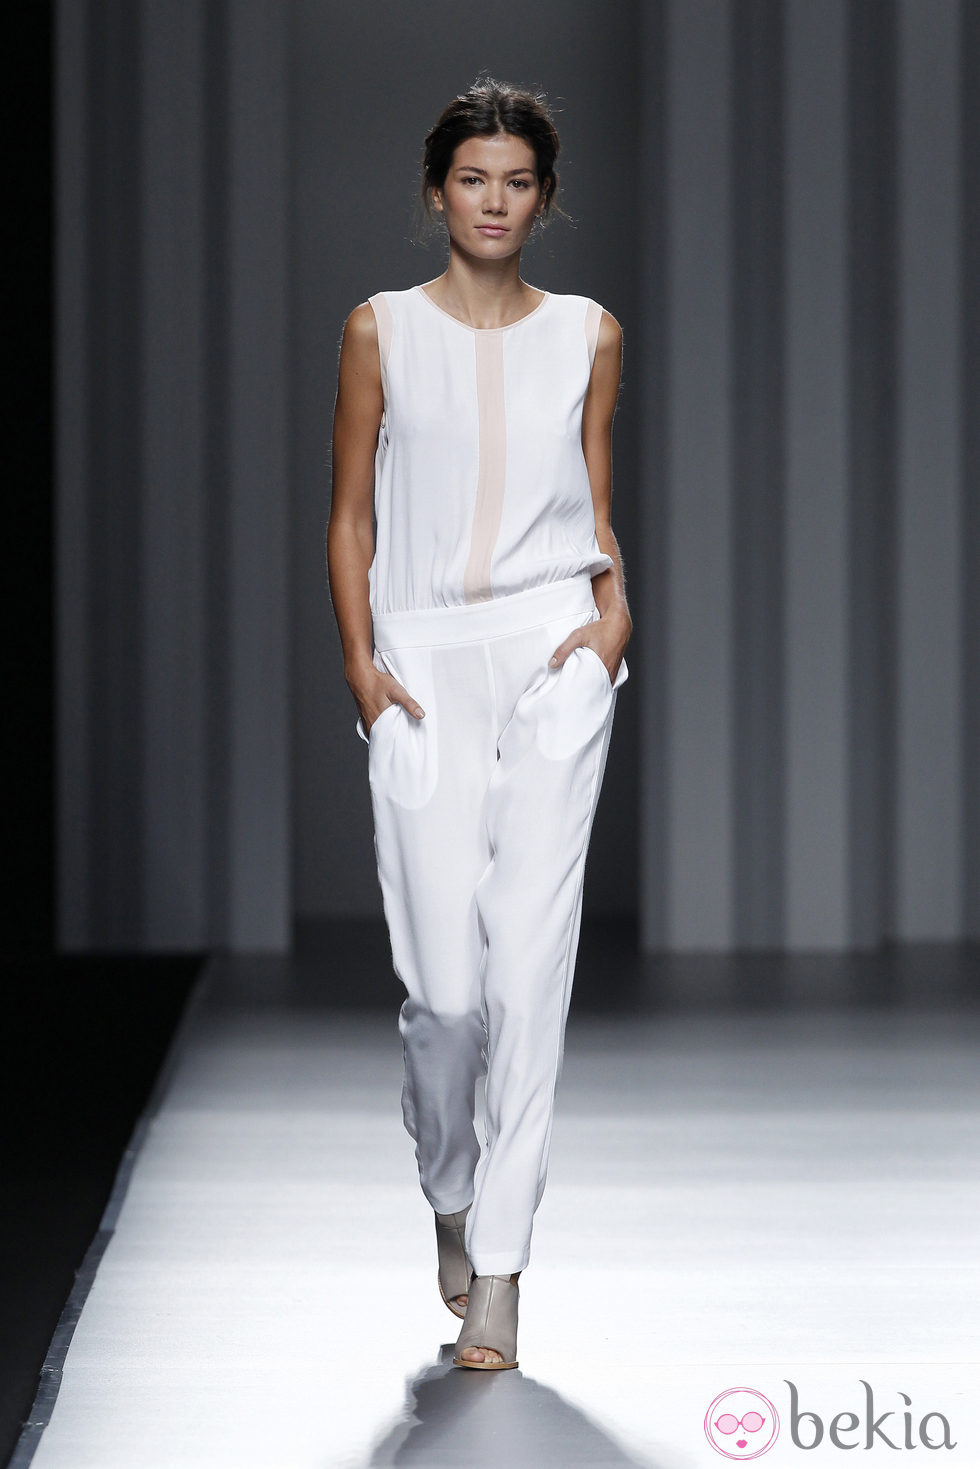 Jumpsuit blanco de la colección primavera/verano 2014 de Sita Murt en Madrid Fashion Week